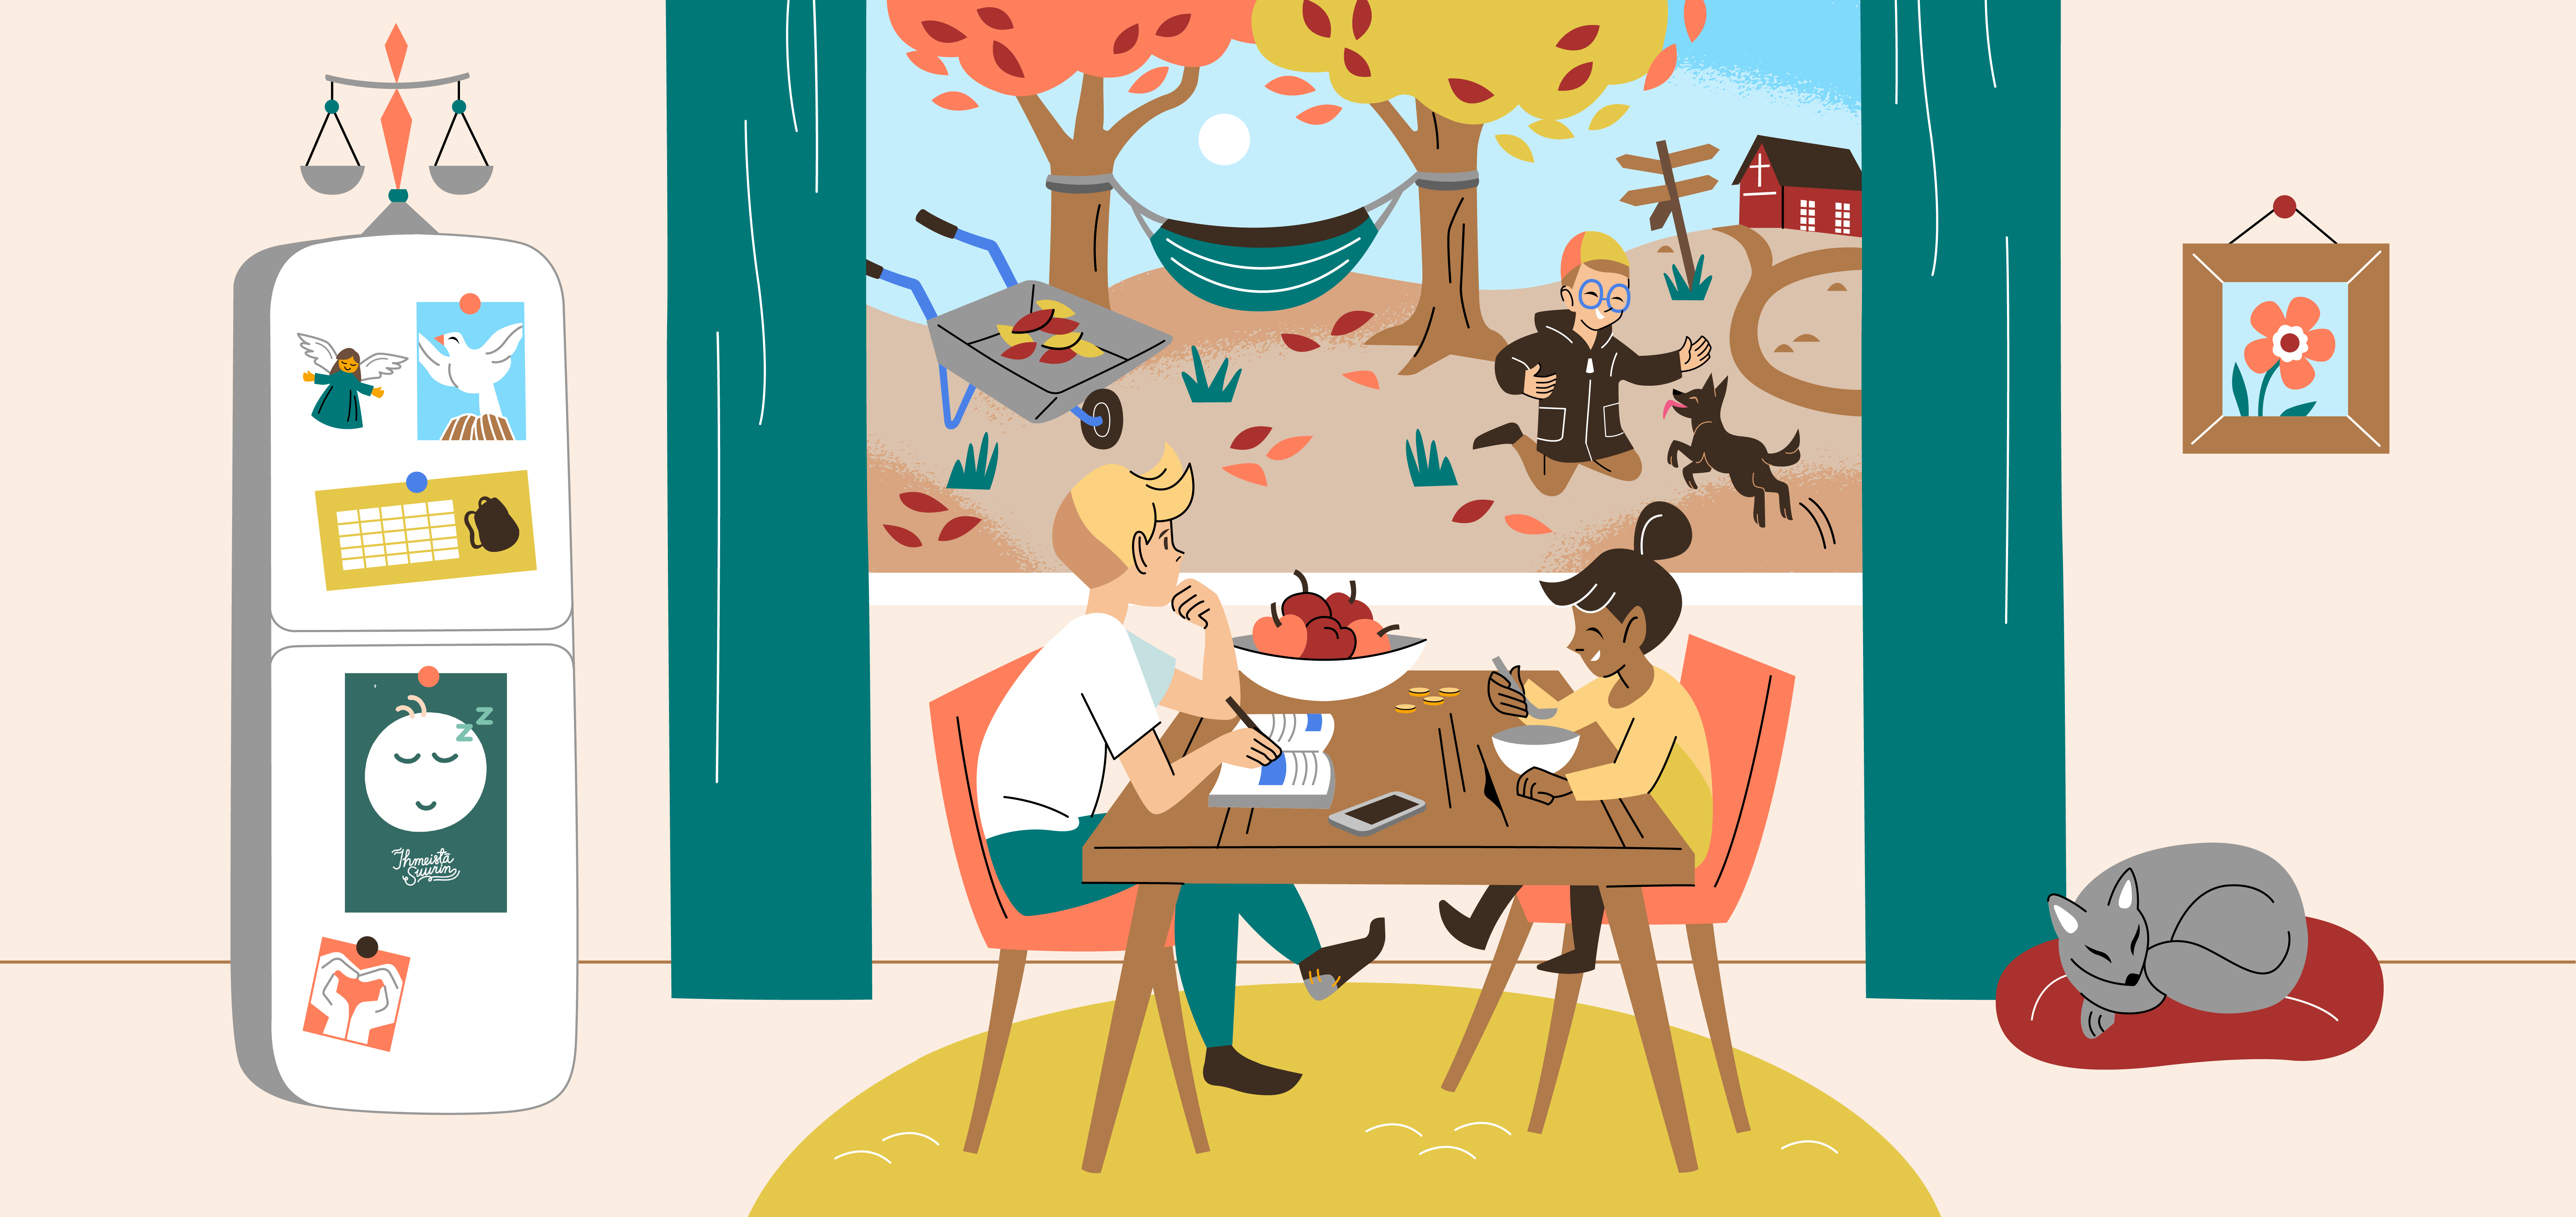 Lapsi ja nuori istuvat pöydän ääressä. Ikkunasta näkyy syksyinen maisema.